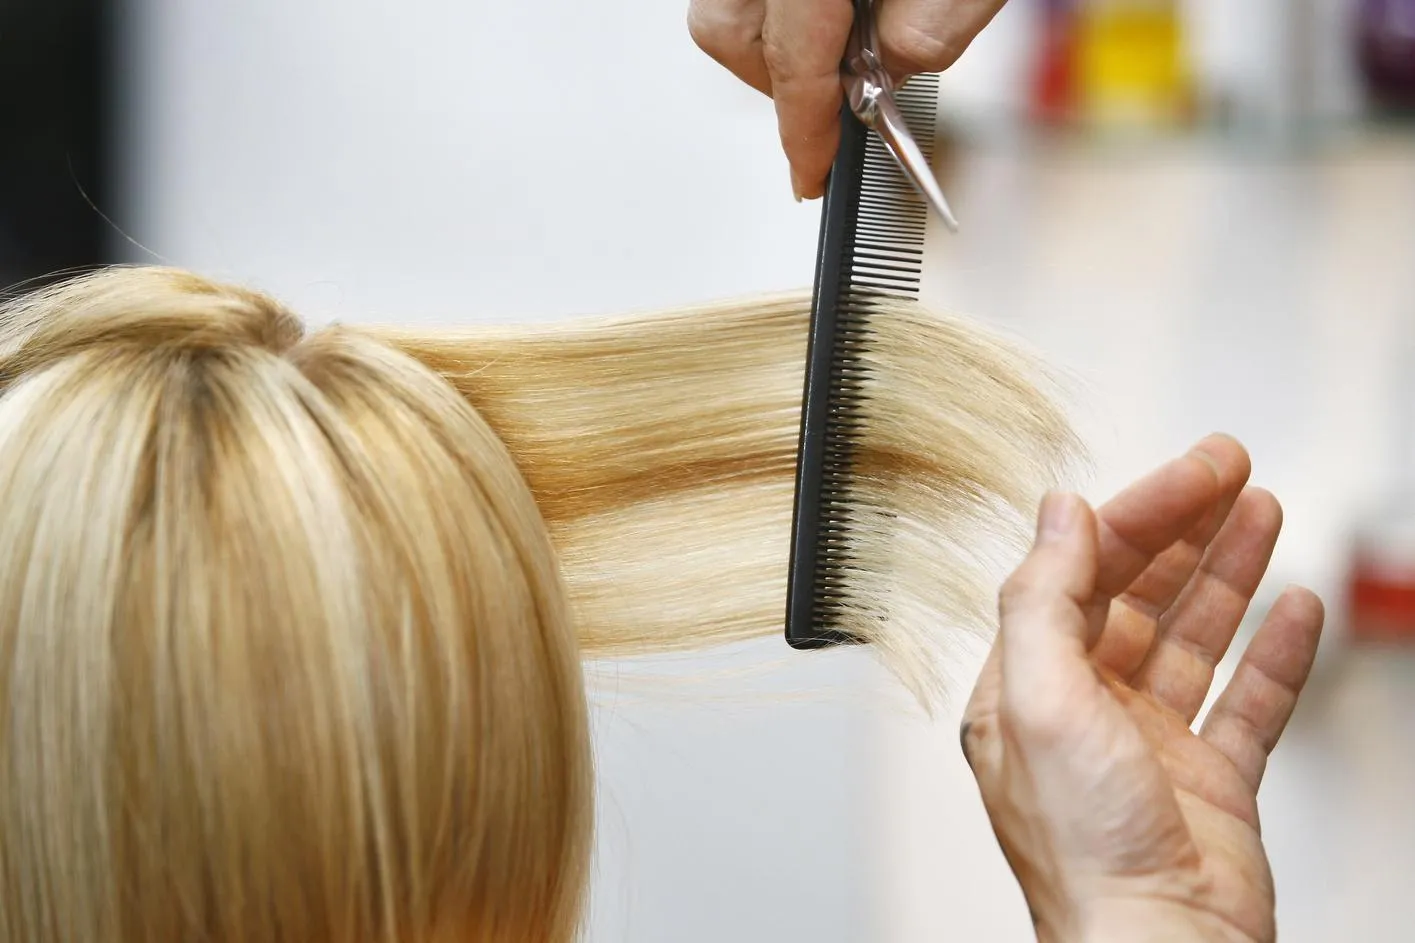 Сприятливі дні для стрижки волосся: 16, 19, 20, 21 серпня та інші дати